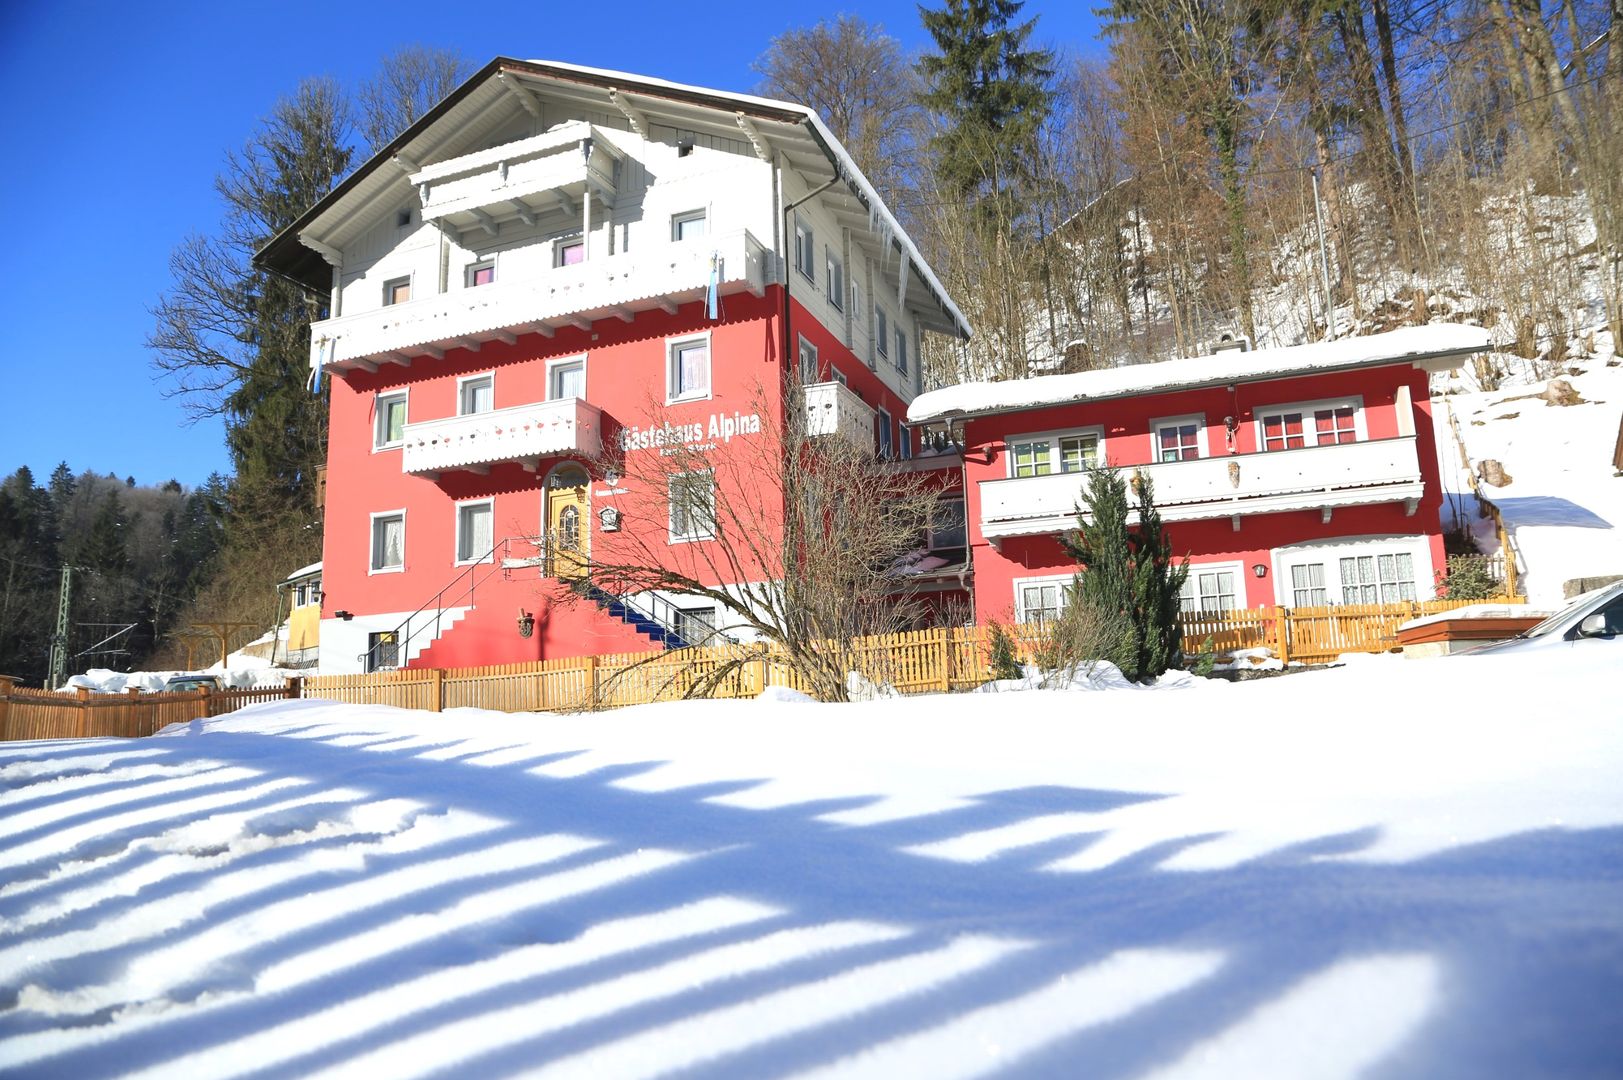 Meer info over Gästehaus Alpina  bij Wintertrex